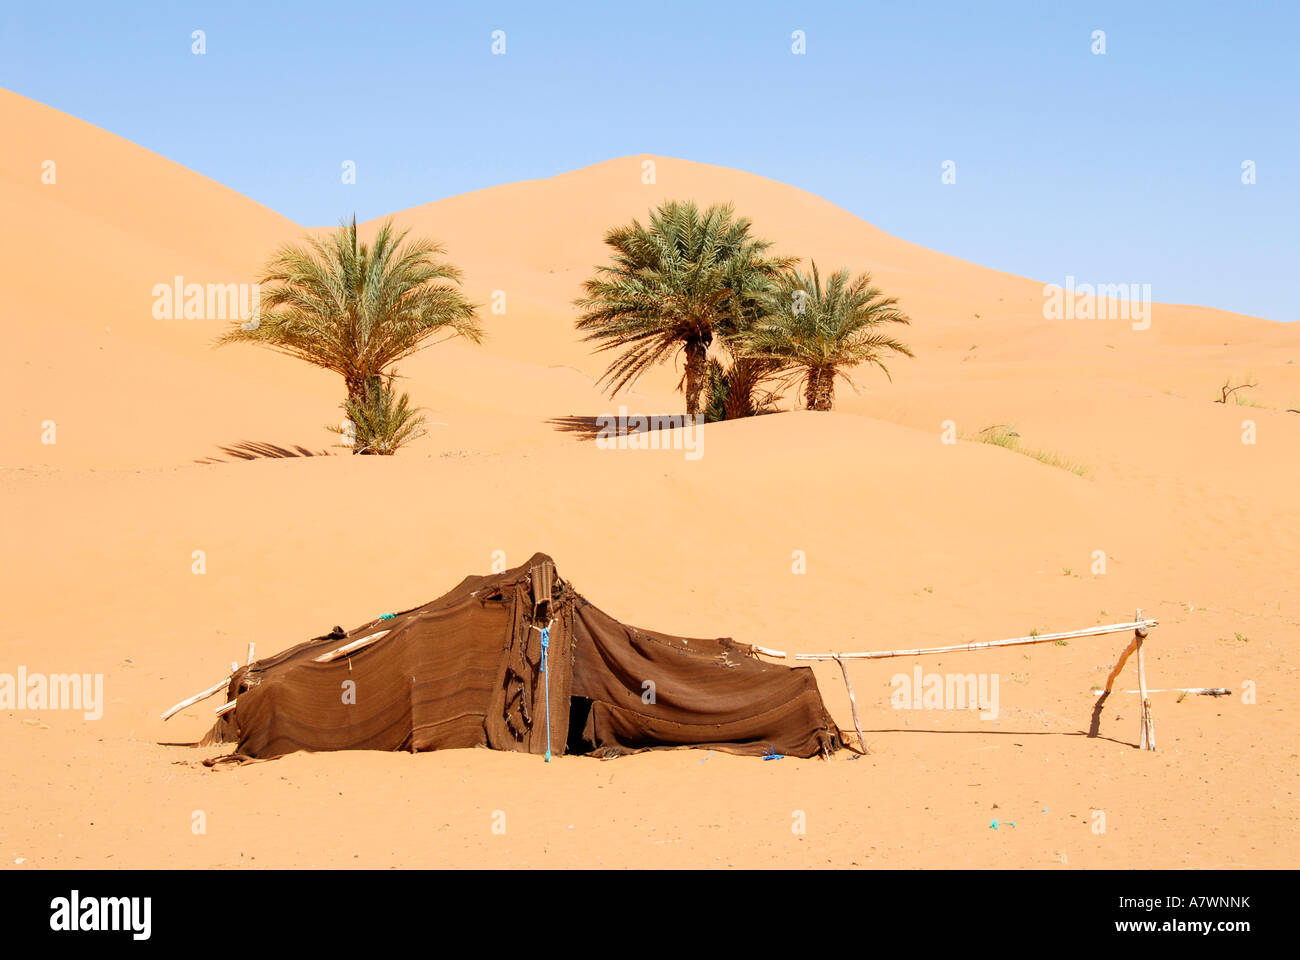 Les nomades éleveurs de tente avec des palmiers dans sanddune Erg Chebbi Merzouga Maroc Banque D'Images